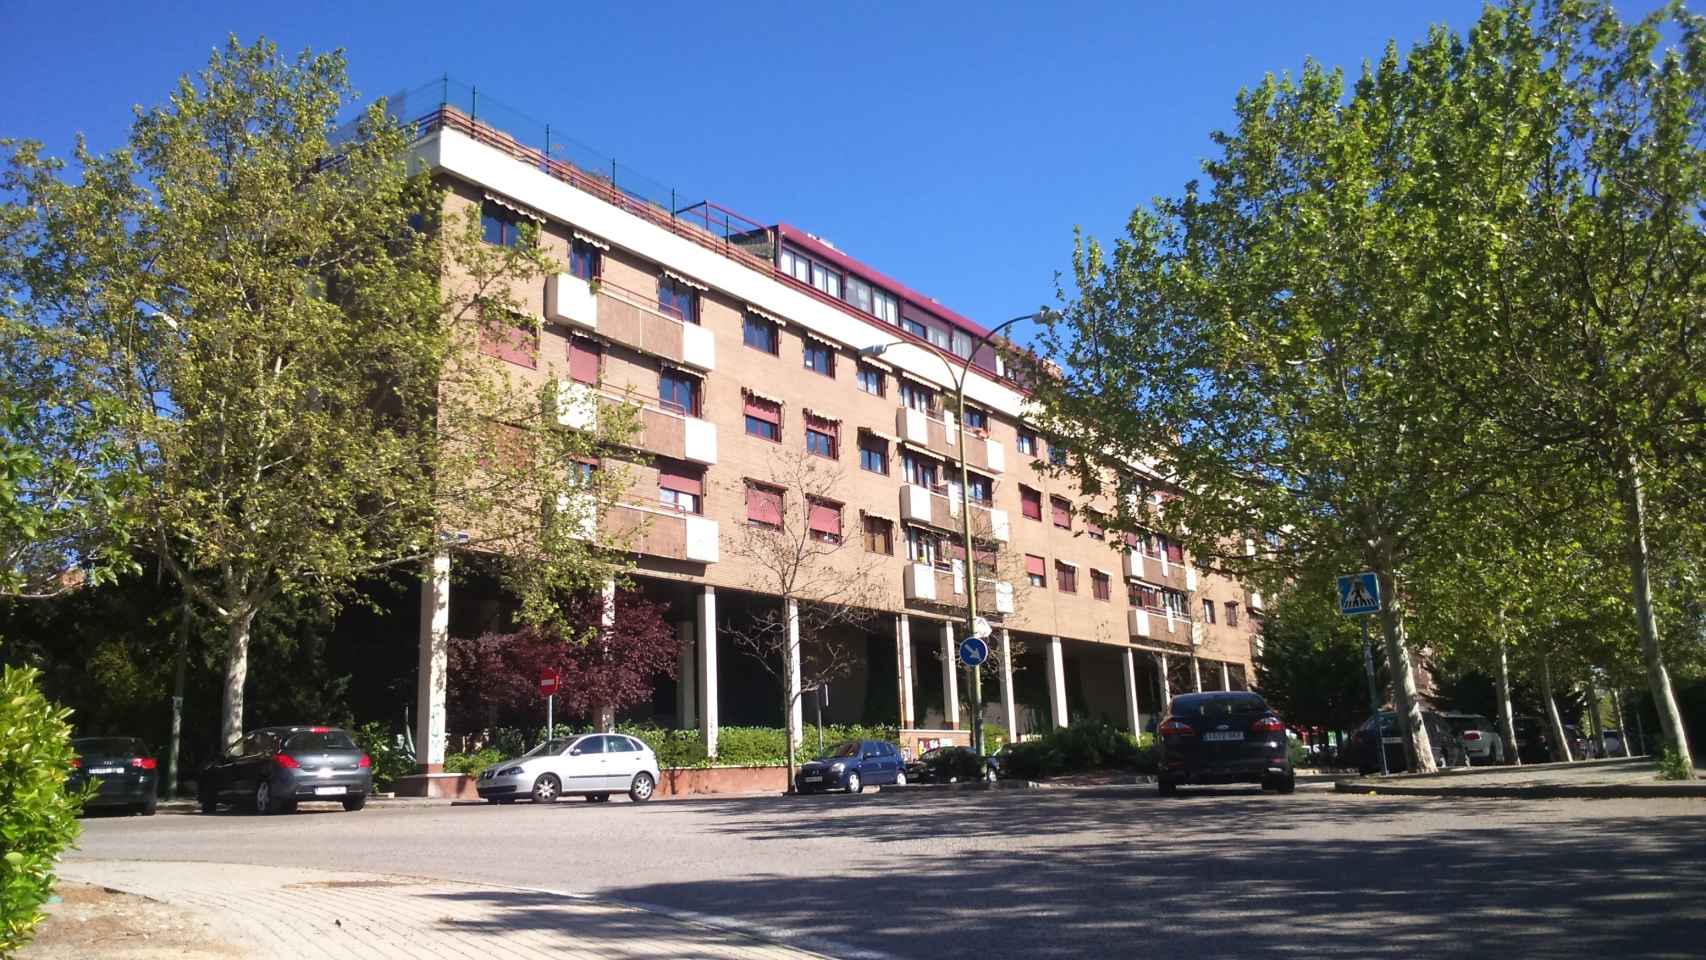 El edificio se erige en el barrio madrileño de Mirasierra.